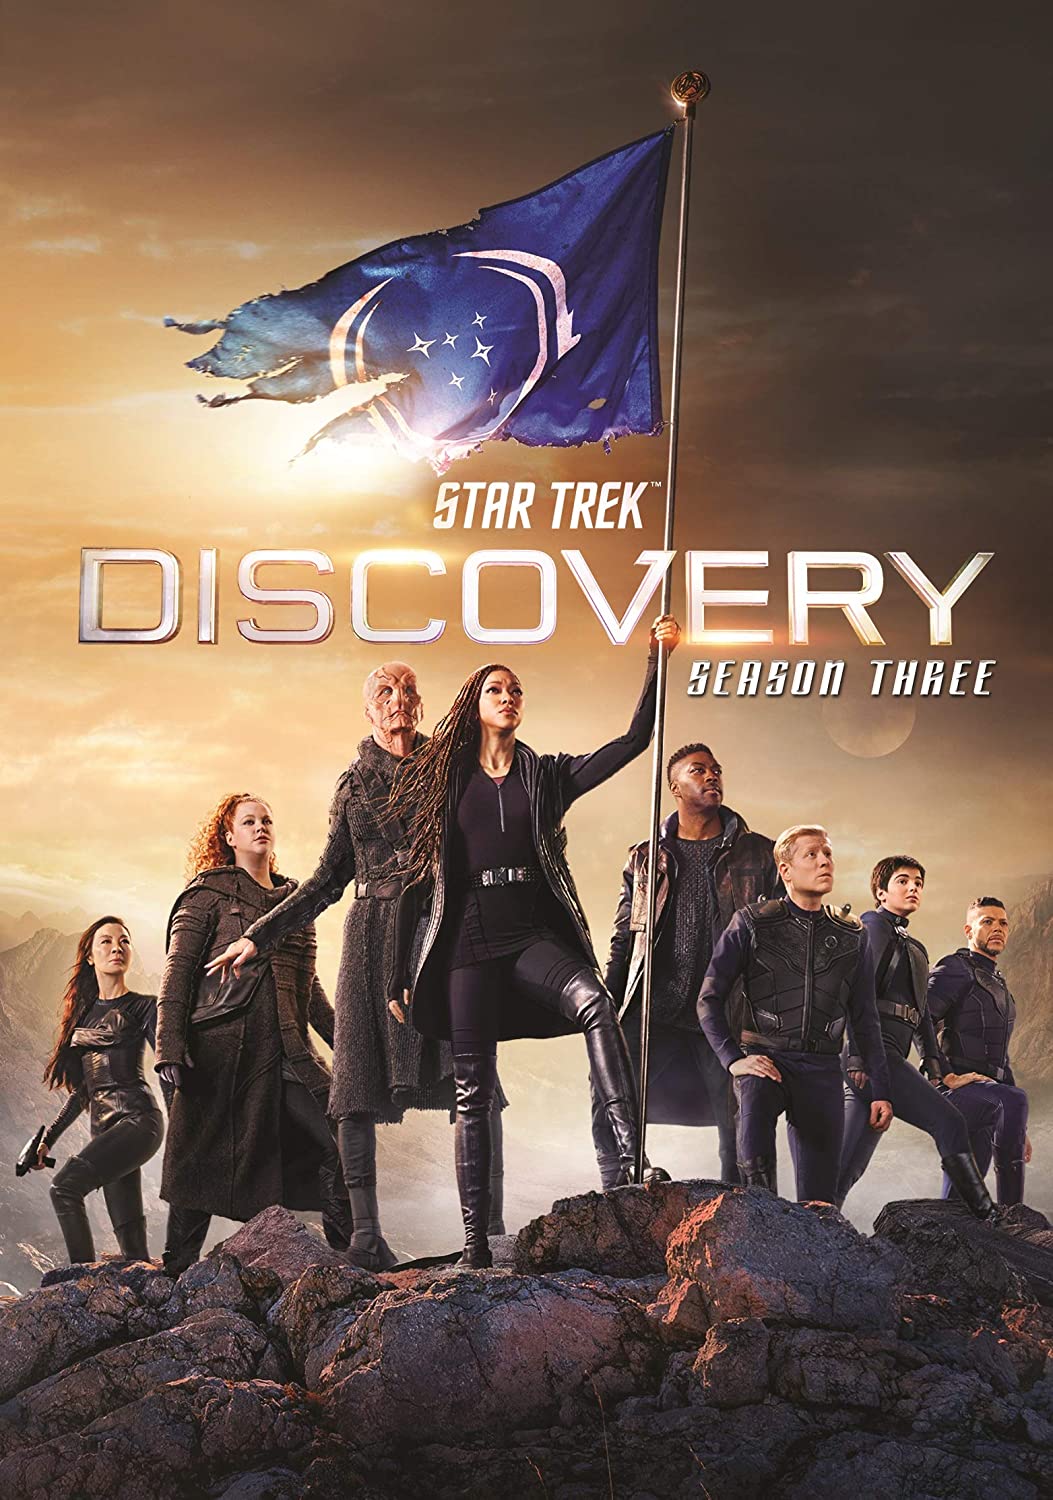 ดูหนังออนไลน์ Star Trek Discovery Season 3 EP3 สตาร์ เทรค ดิสคัฟเวอรี่ ซีซั่นที่ 3 ตอนที่ 3